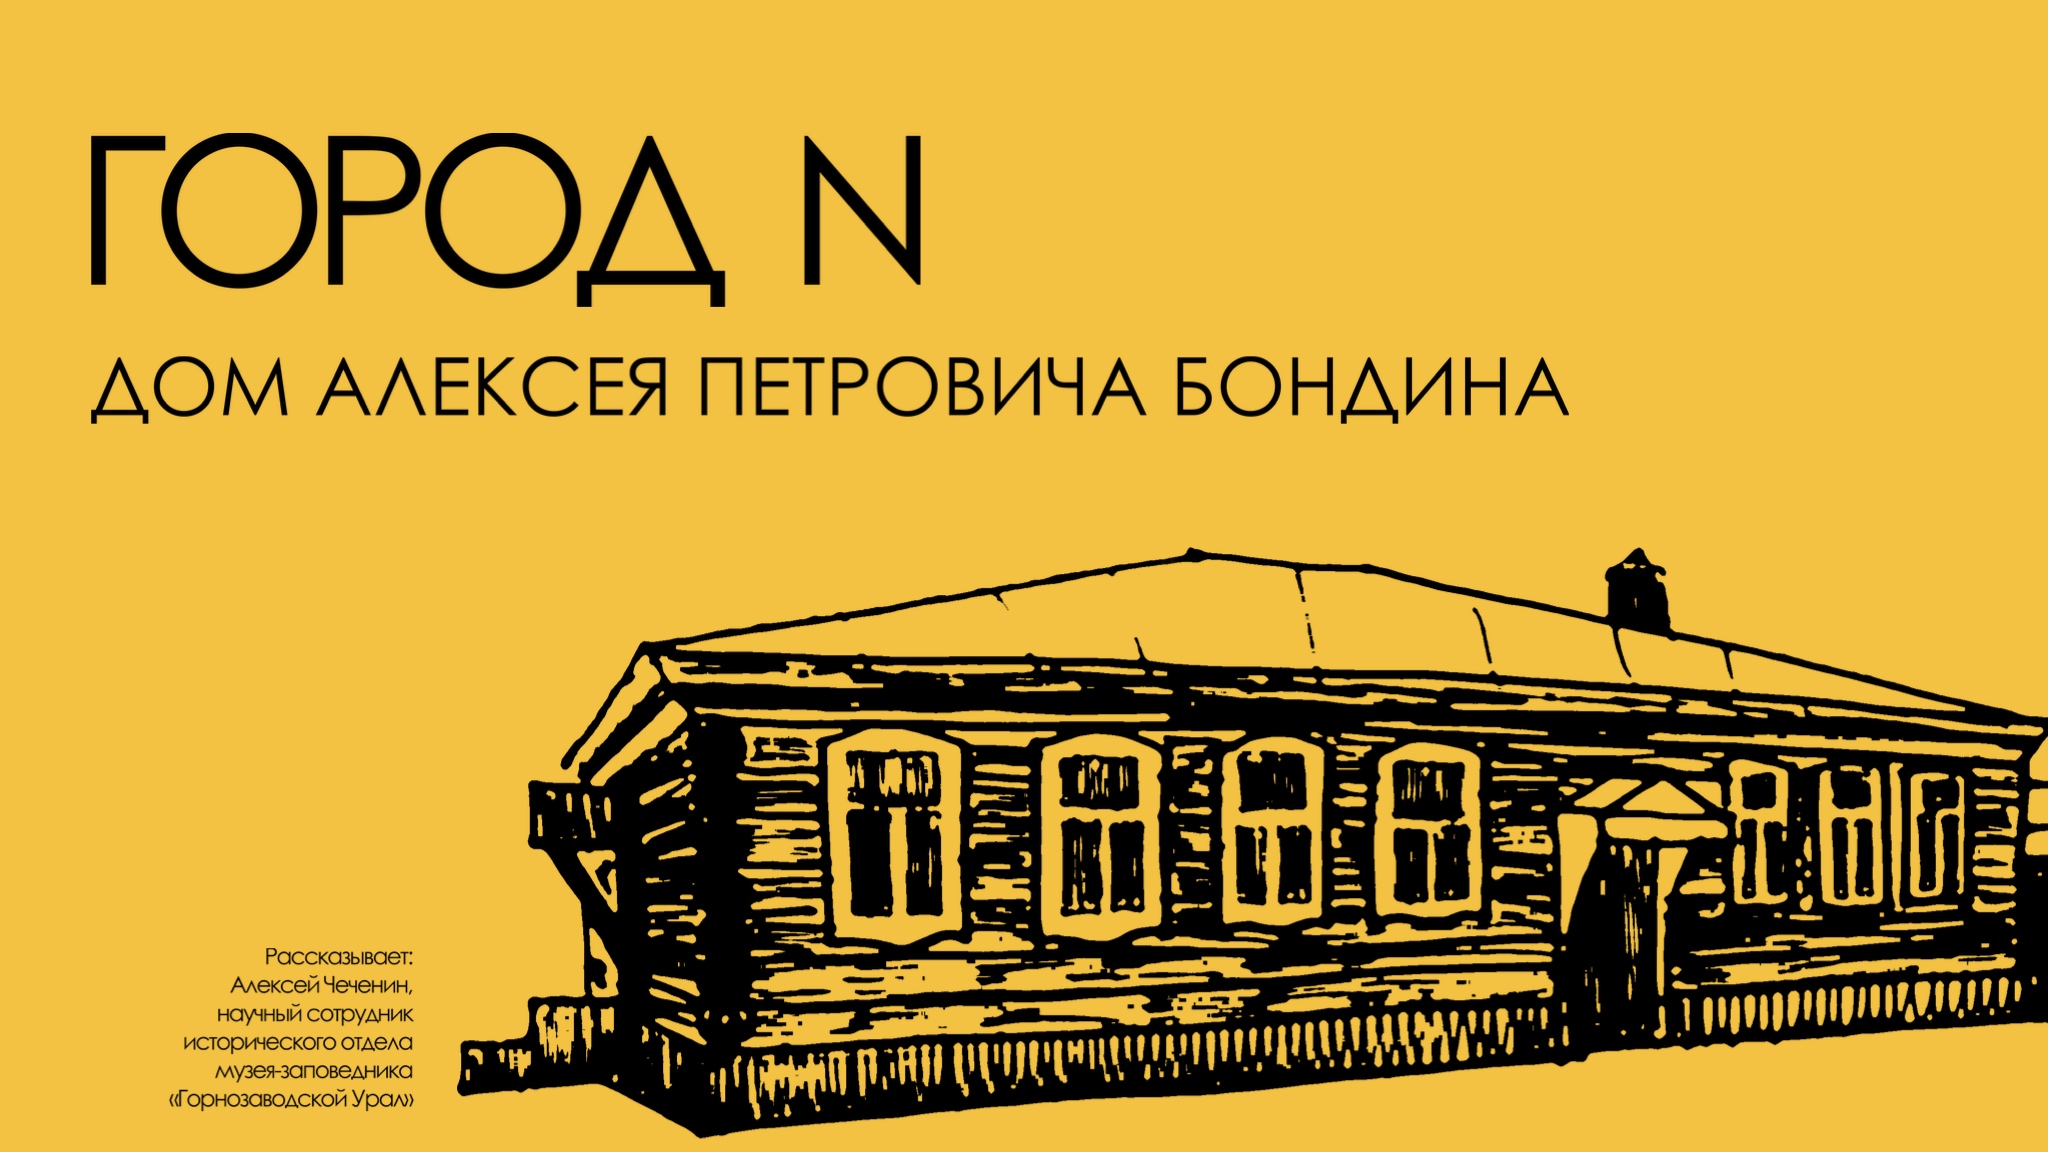 Логотипы Нижний Тагил театр Бондино